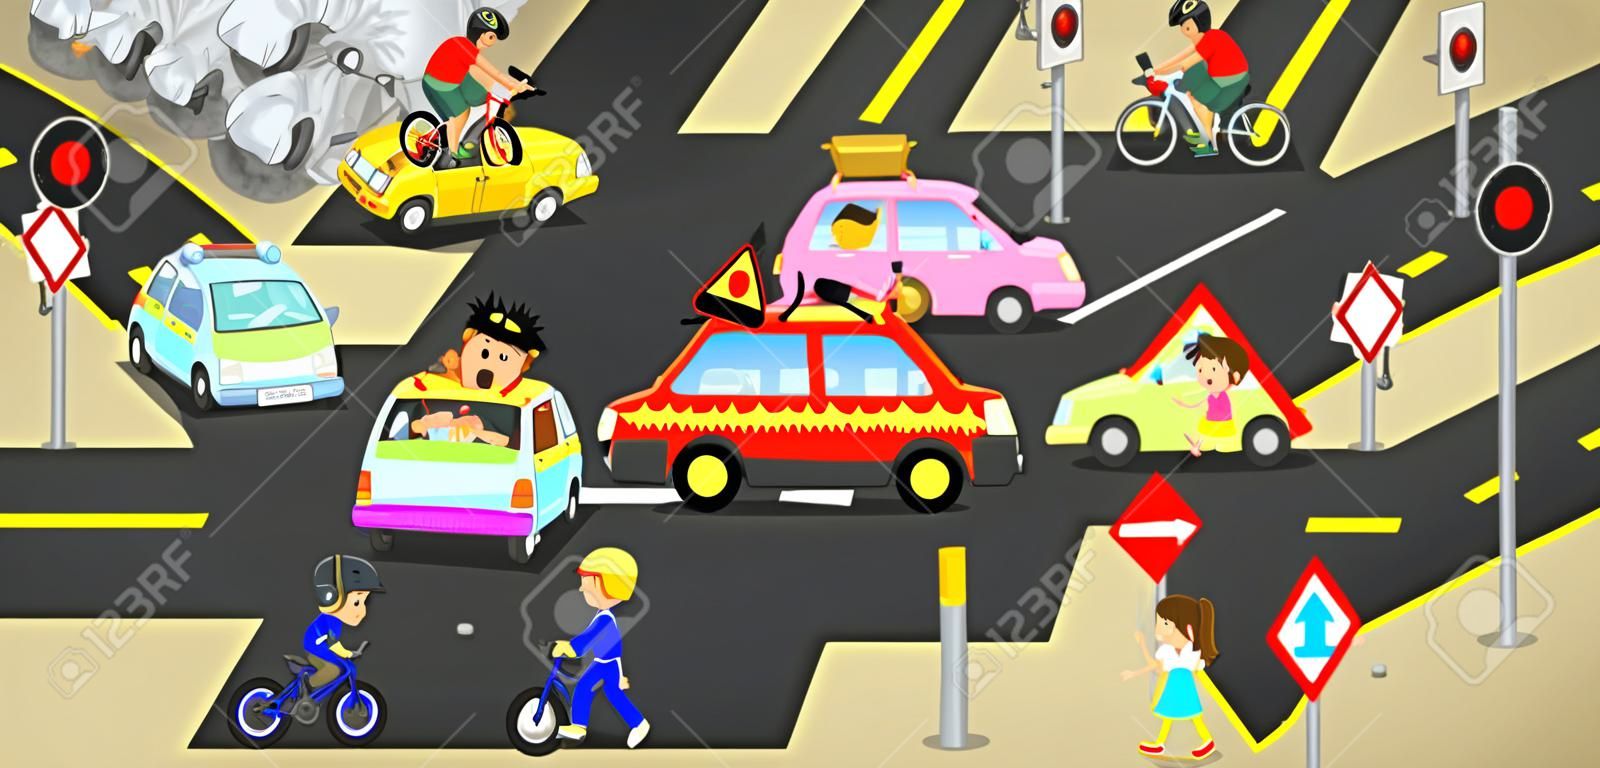 Ongevallen, verwondingen, gevaar en veiligheid voorzichtigheid op het verkeer wegvoertuigen veroorzaakt door auto's fiets en onzorgvuldige mensen op straat met teken en symbool in leuke grappige cartoon concept voor kinderen, creëren door vector